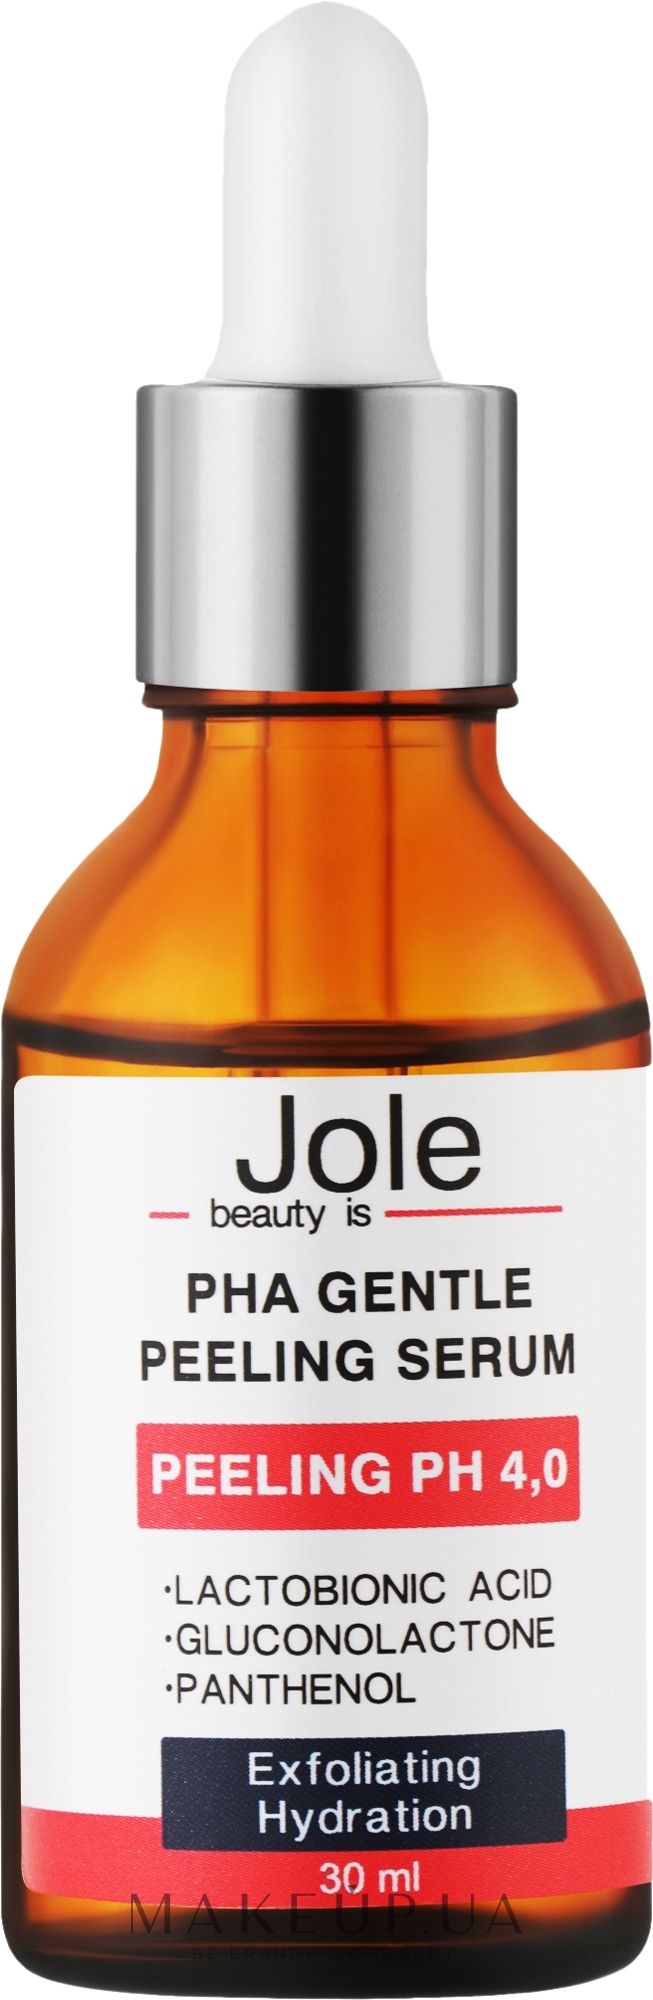 Пілінг-сироватка з РНА кислотами для чутливої шкіри - Jole PHA Gentle Peeling Serum РН 4.0 — фото 30ml